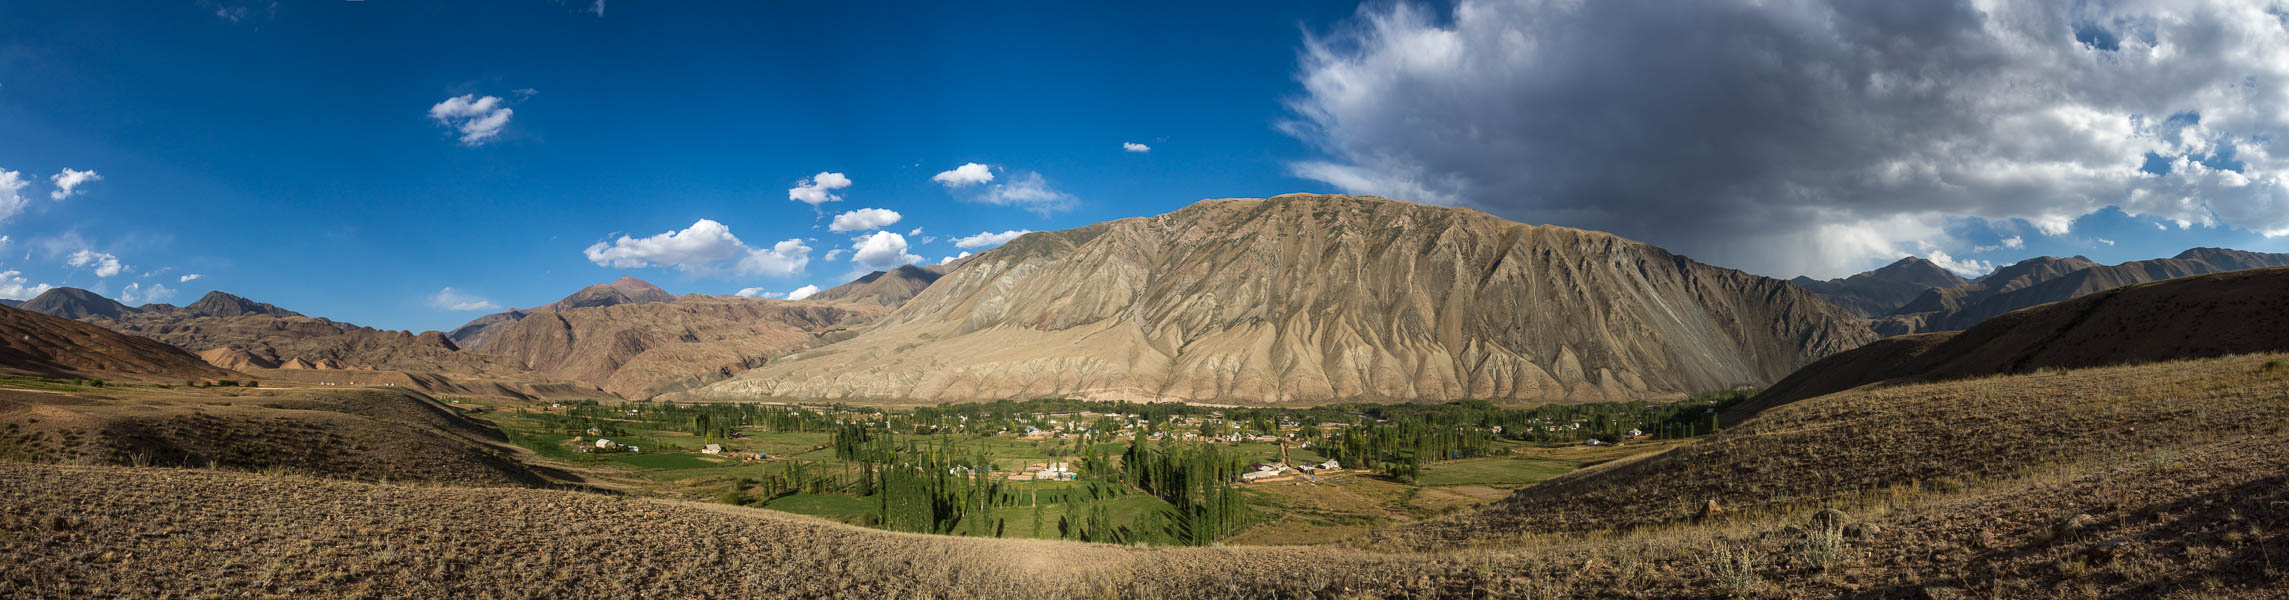 Vallée de Kyzyl-Oi